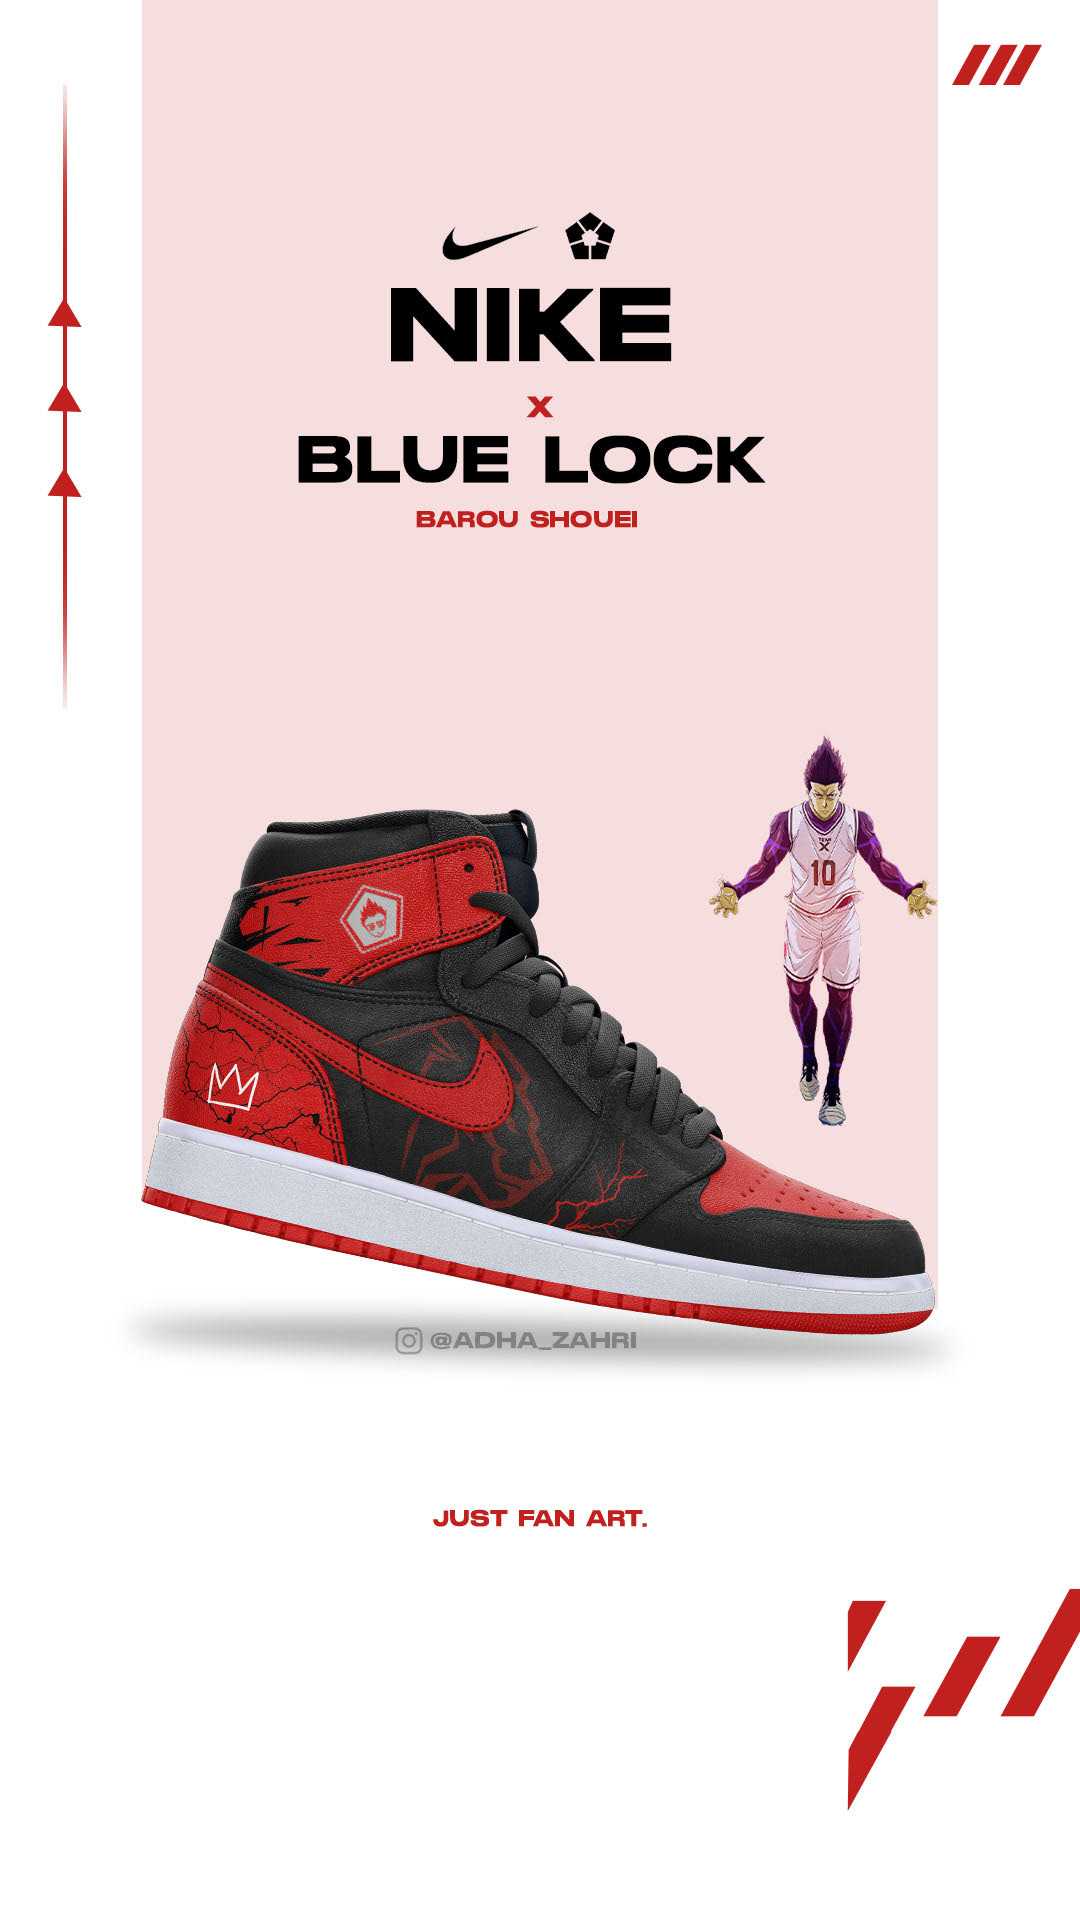 Blue Lock X Nike - Project on Behance